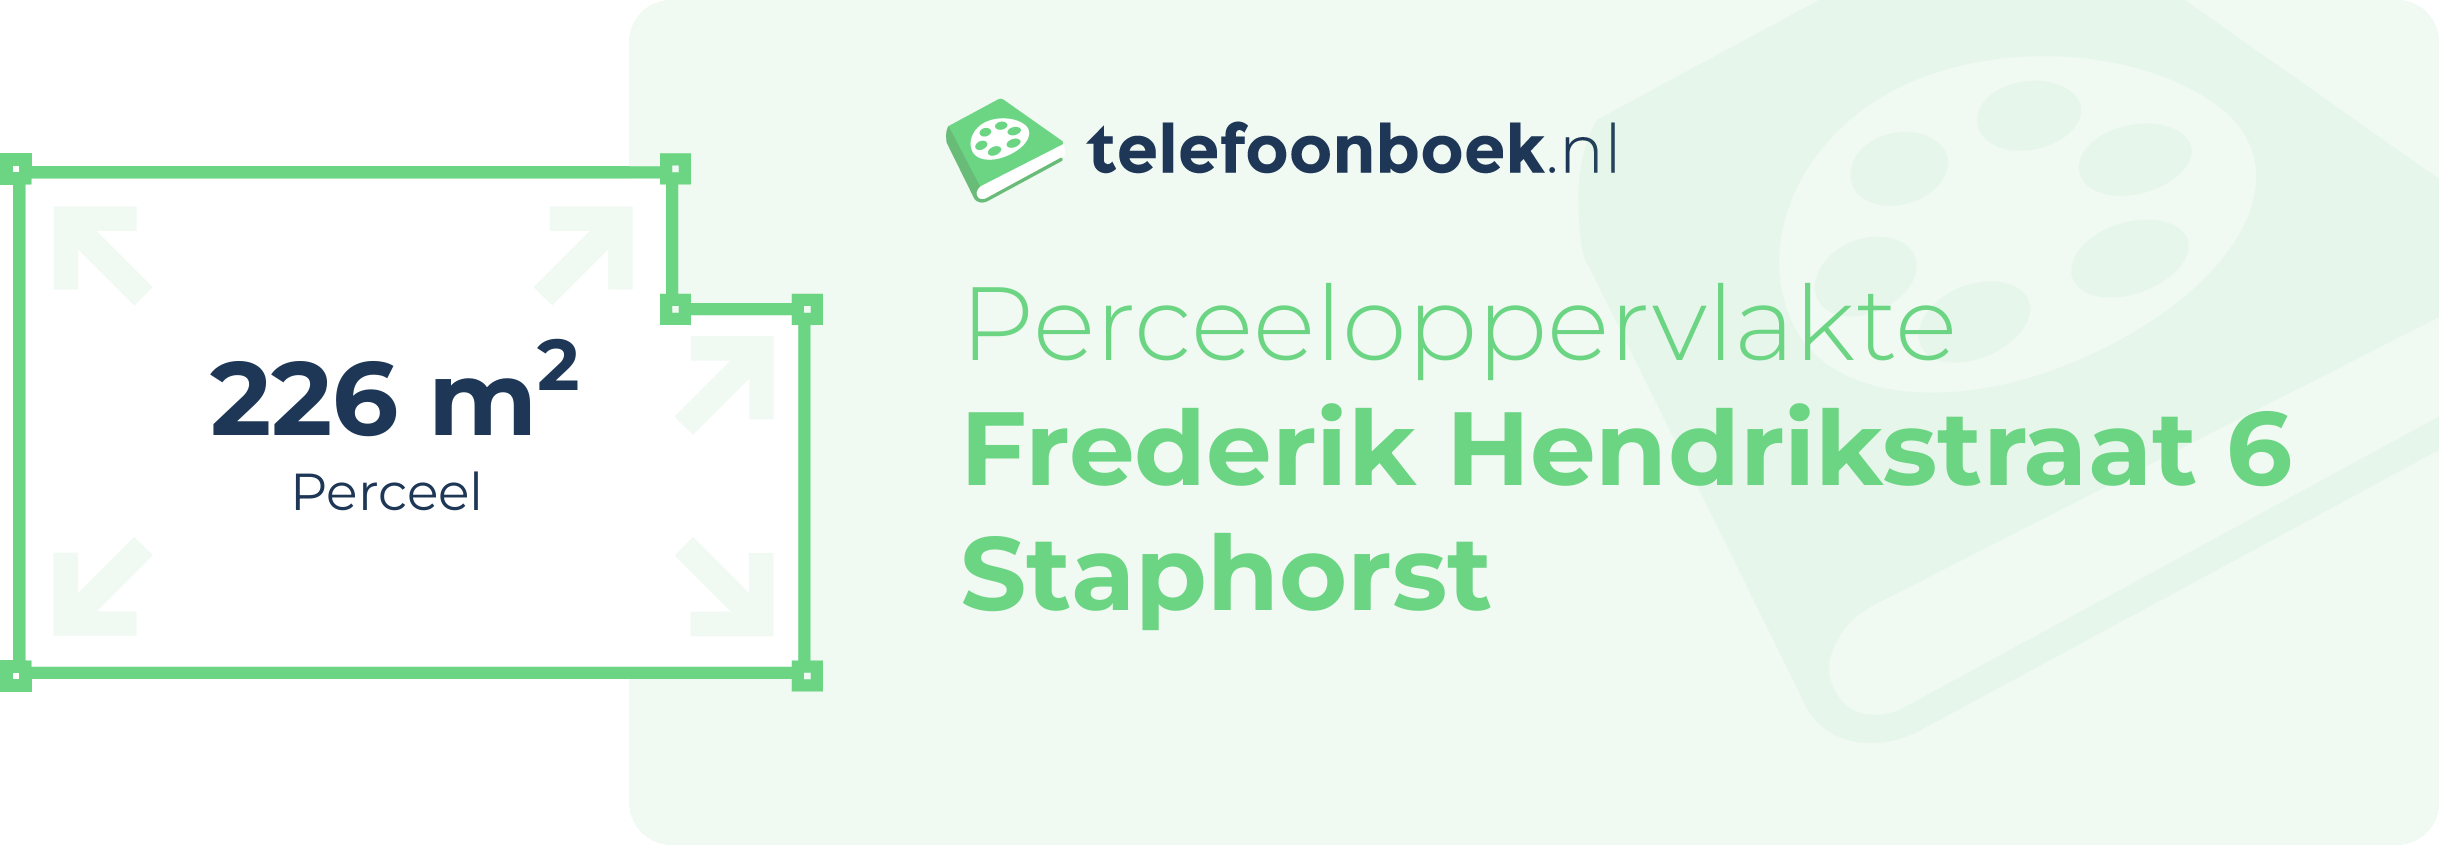 Perceeloppervlakte Frederik Hendrikstraat 6 Staphorst